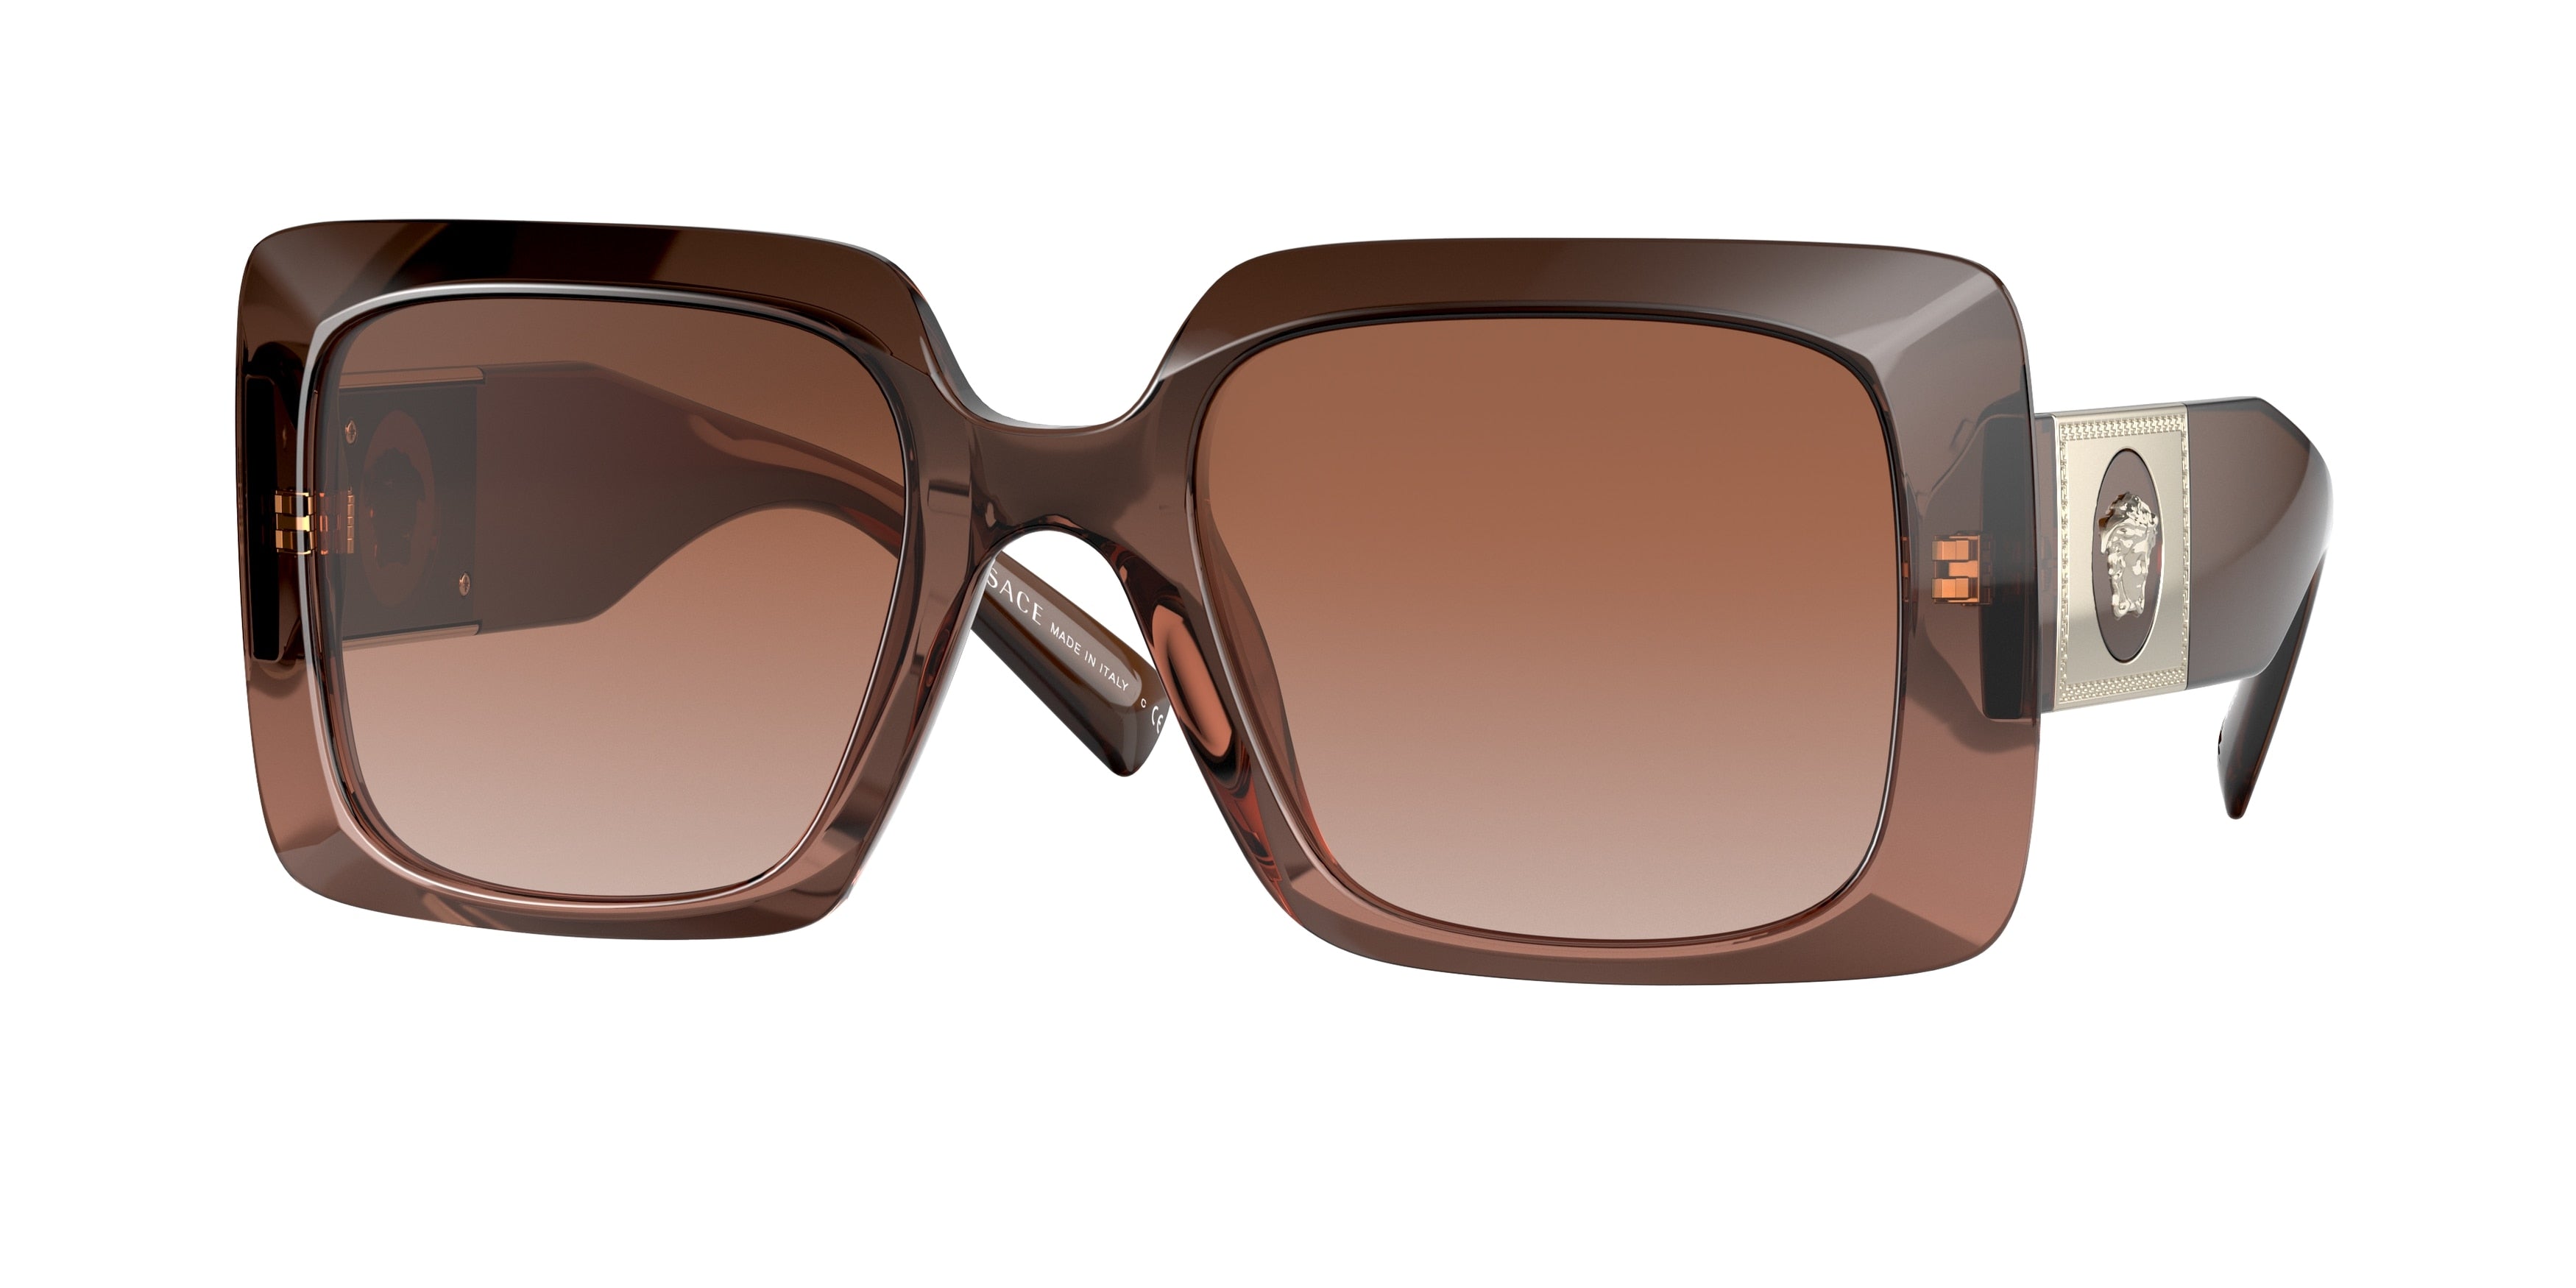 Versace VE4405 Rectangle Sunglasses  533213-Transparent Brown Gradient 54-140-22 - Color Map Beige